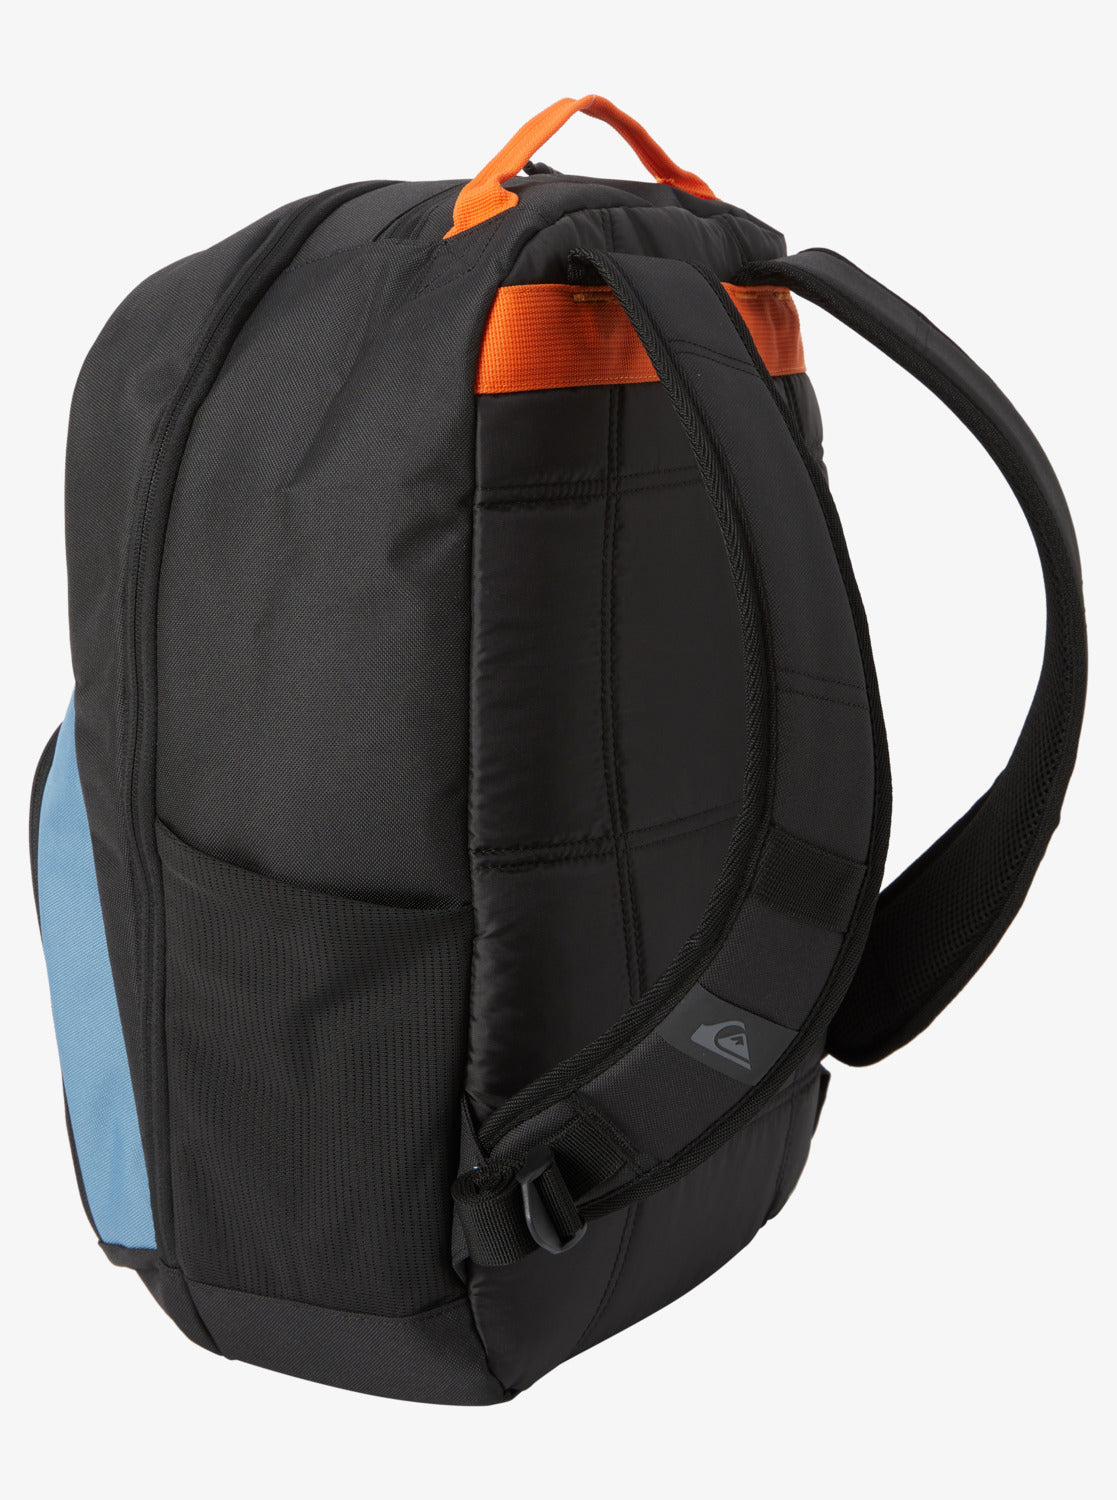 Quiksilver Schoolie Cooler 2.0 Backpack showing rear